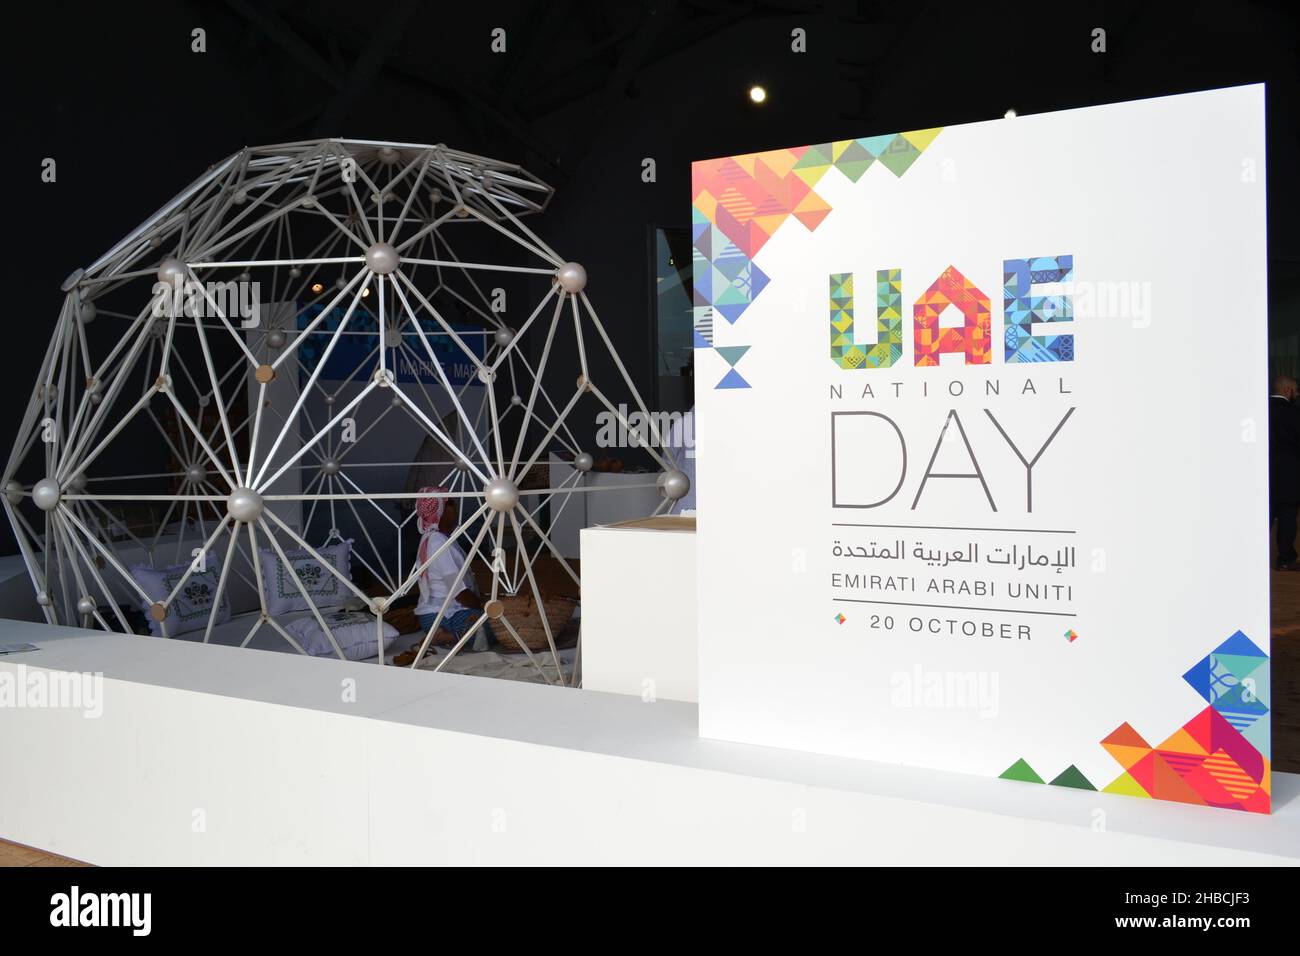 Mailand, Italien - 20. Oktober 2015: Dekoration mit visueller Kunst des Eingangs zur Kongresshalle während des Tages der Vereinigten Arabischen Emirate um EXPOMilano2015 Uhr. Stockfoto